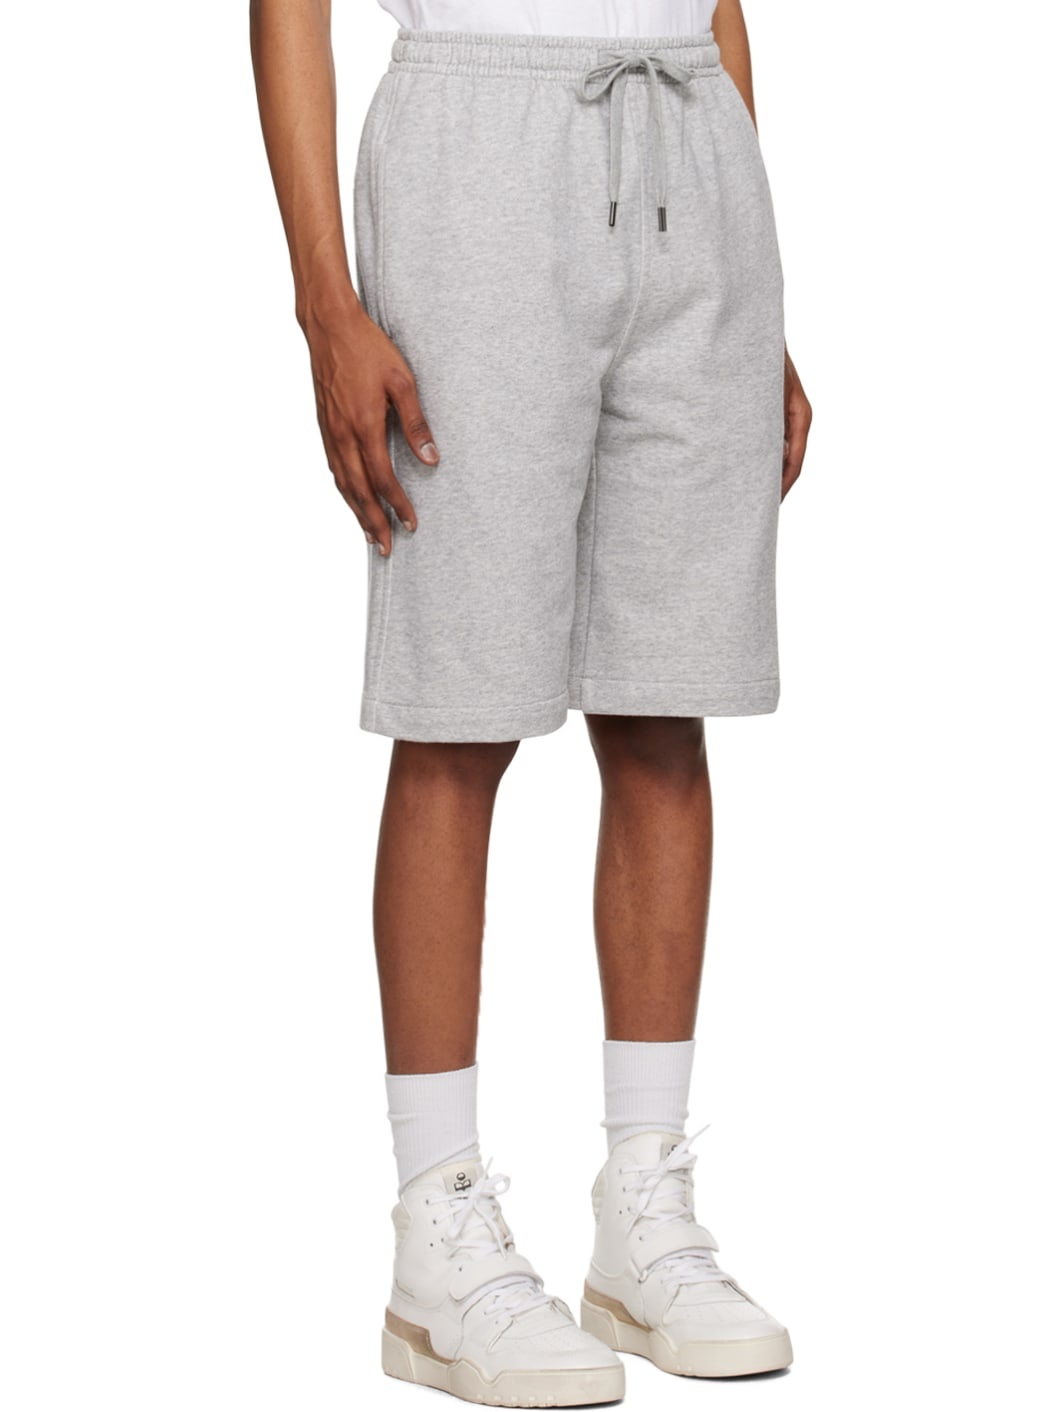 Gray Mahelo Shorts - 2